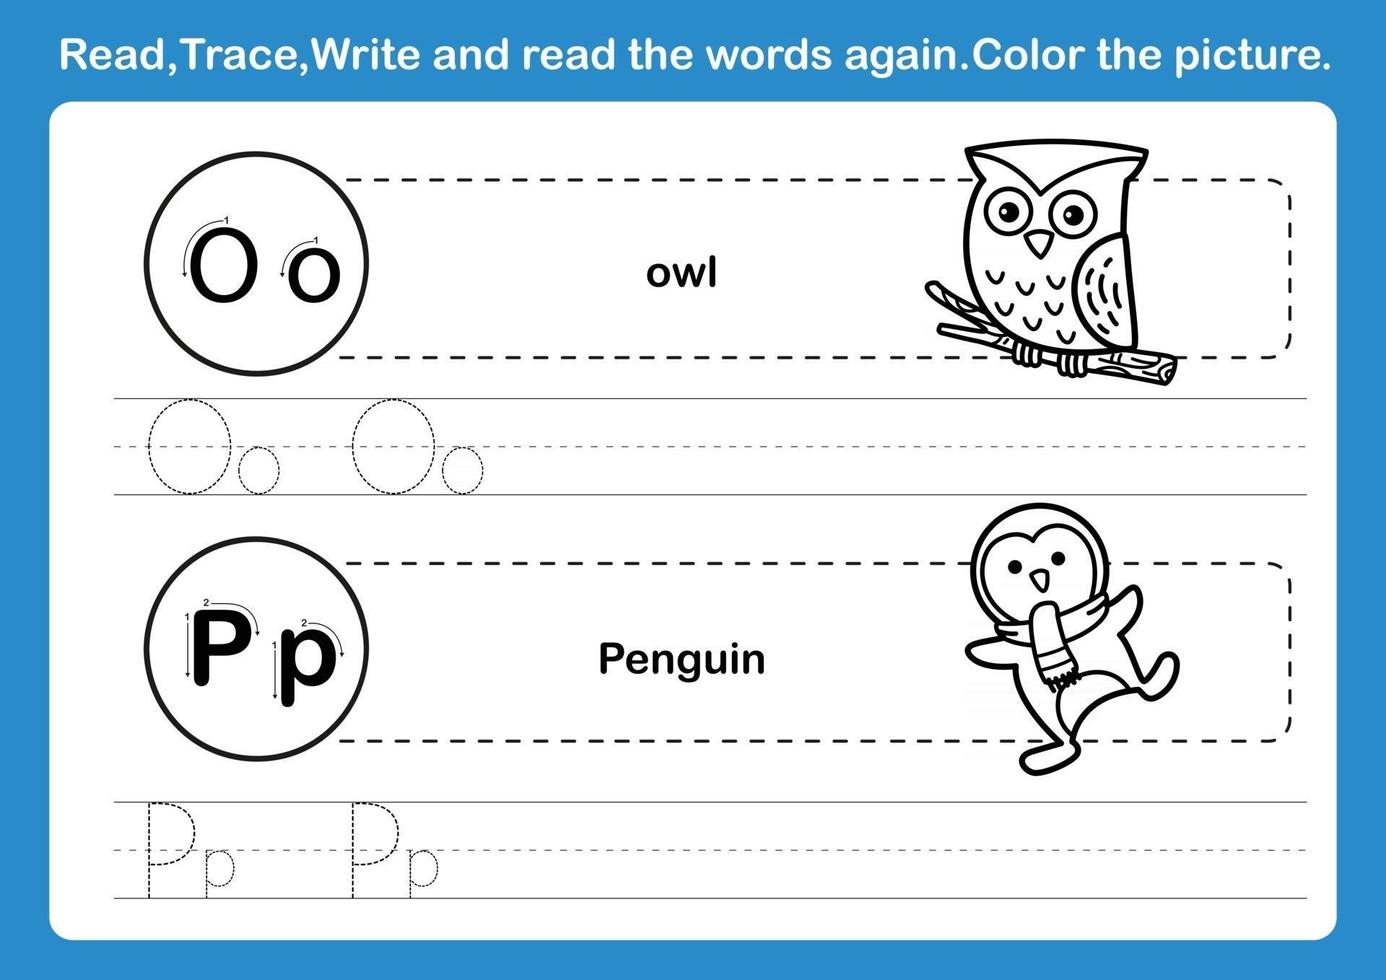 ejercicio de alfabeto op con vocabulario de dibujos animados para colorear vector de ilustración de libro